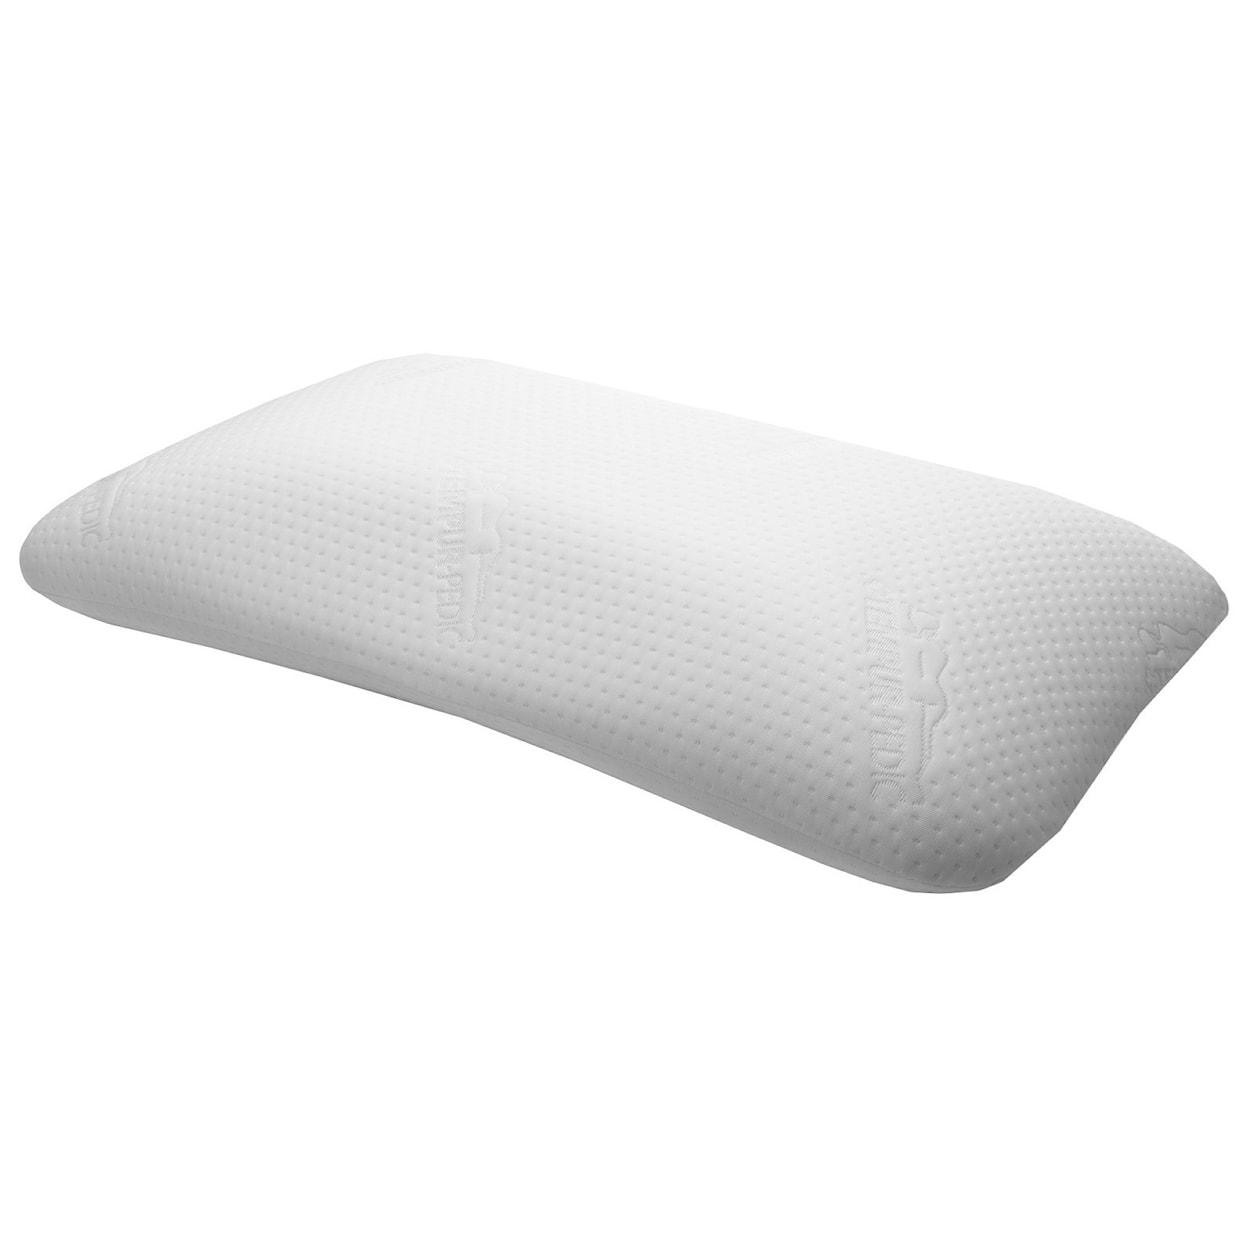 Tempur-Pedic® Tempur-Adapt Symphony Pillow Symphony Duel design Standard Size Pillow